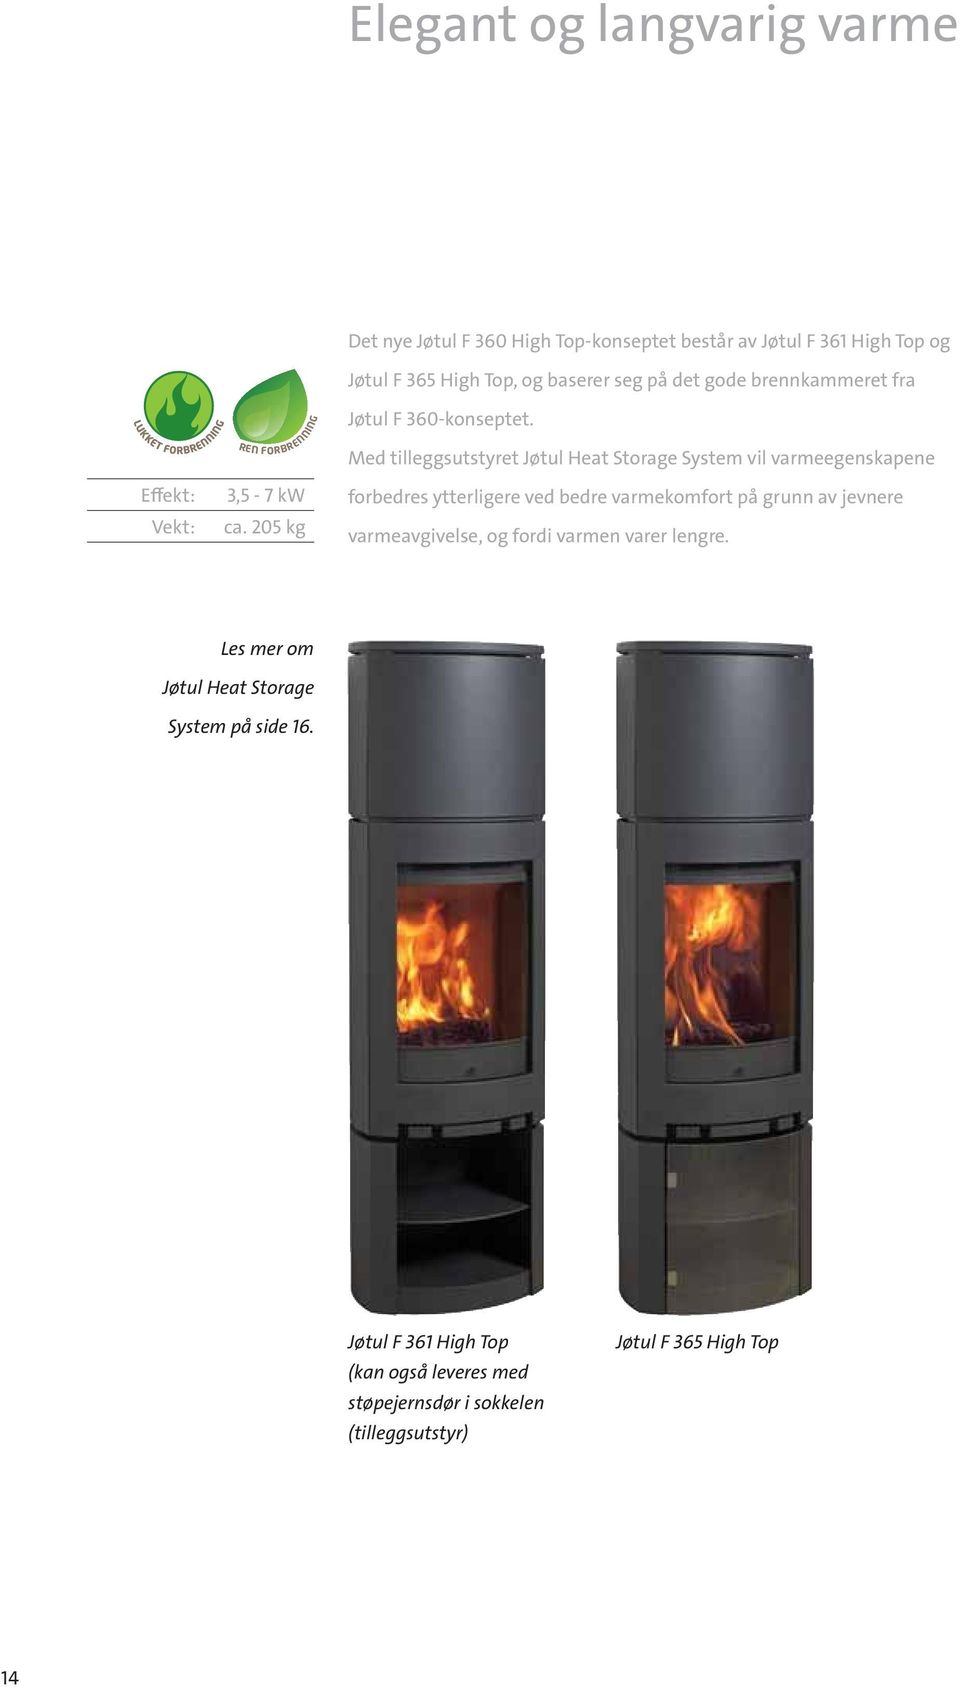 Med tilleggsutstyret Jøtul Heat Storage System vil varmeegenskapene forbedres ytterligere ved bedre varmekomfort på grunn av jevnere